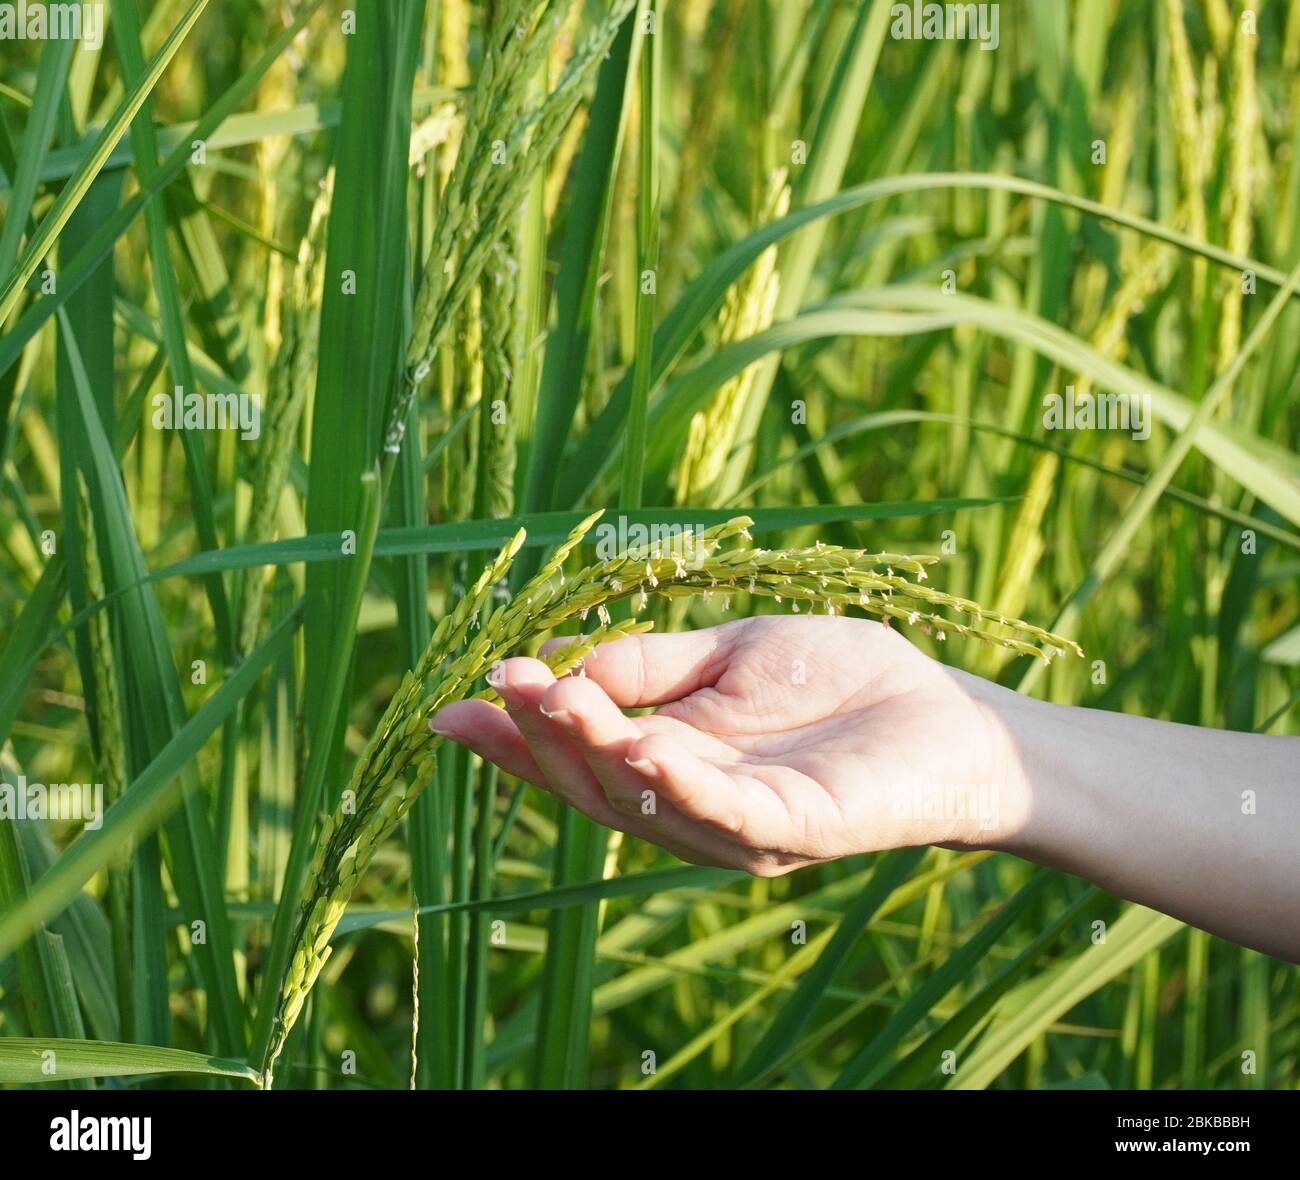 les mains de la femme tiennent les jeunes pics de riz dans le champ de riz Banque D'Images